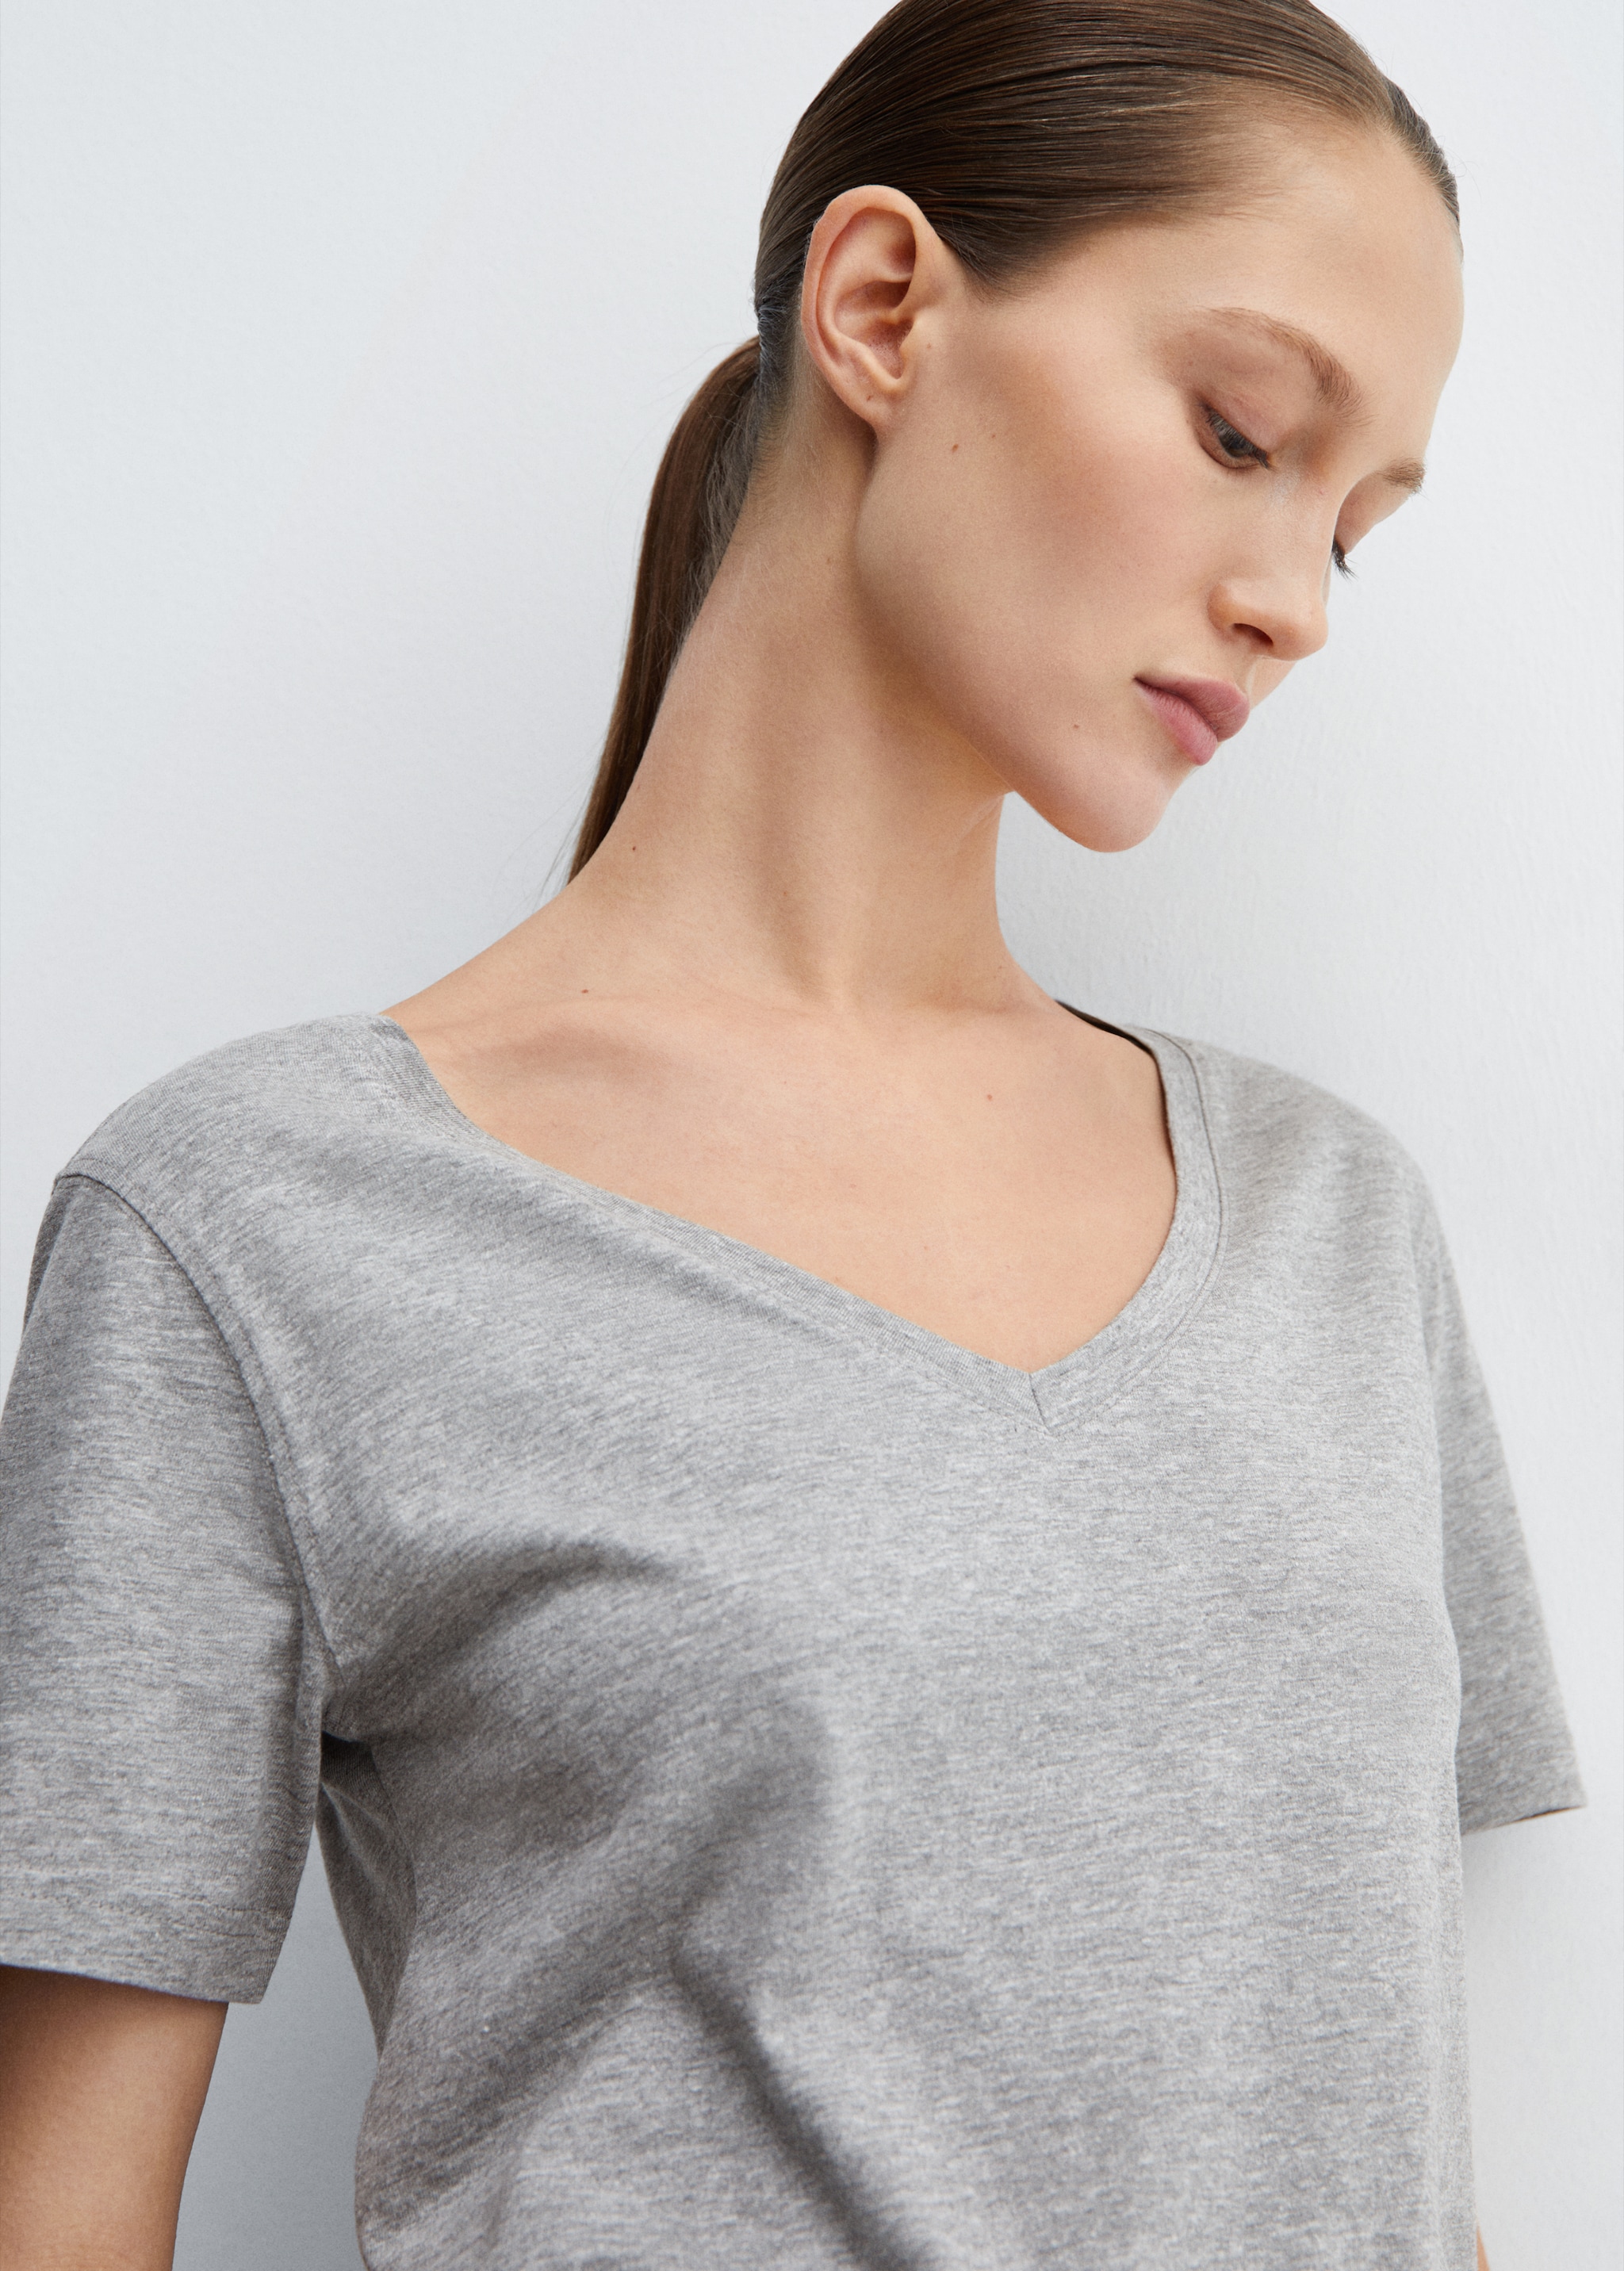 Camiseta cuello pico 100% algodón - Detalle del artículo 1